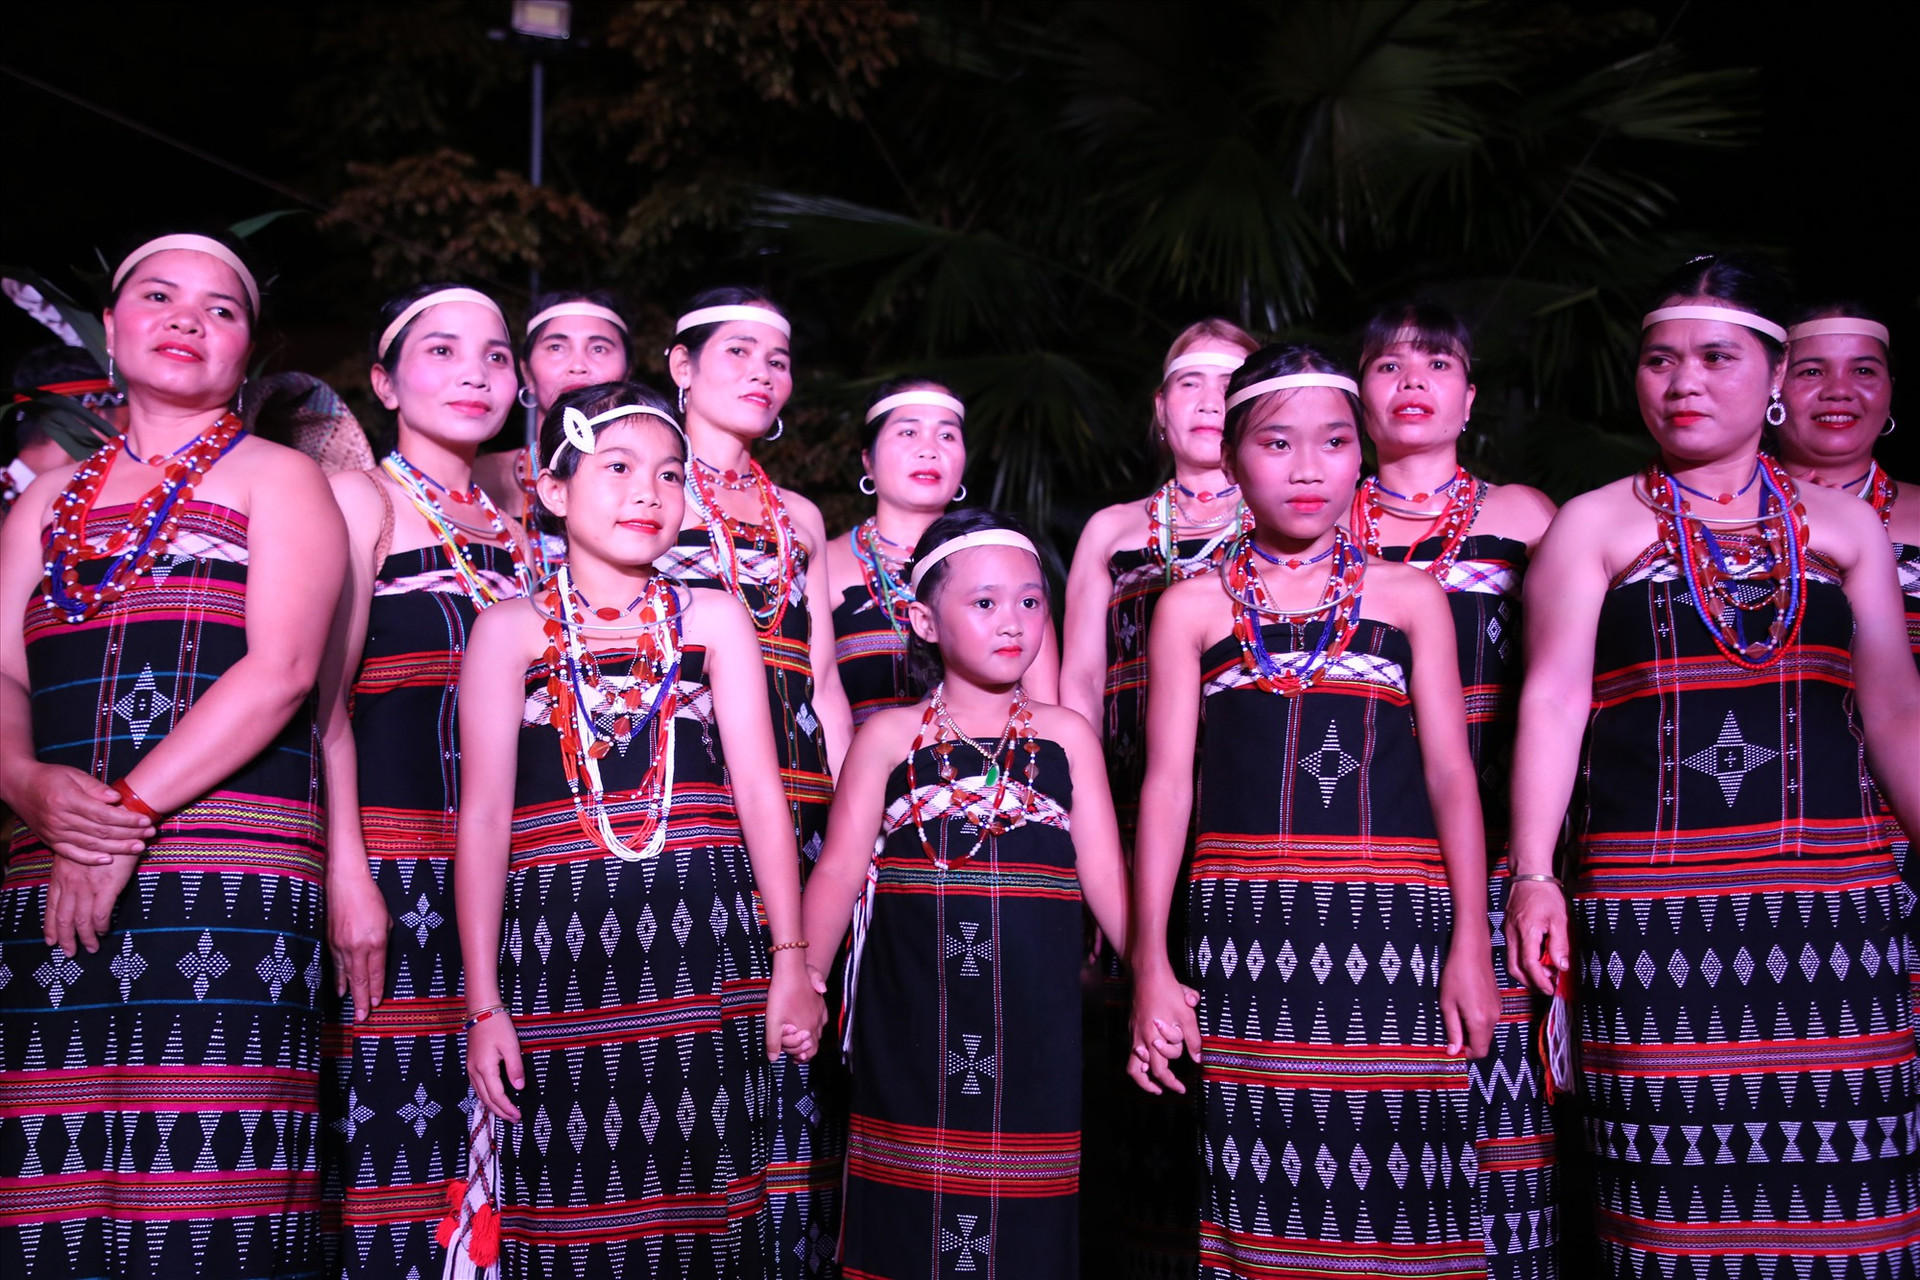 Các cô gái Cơ Tu lung linh trong sắc phục truyền thống, cùng tham gia hội kết nghĩa lần đầu tiên được tổ chức. Ảnh: A.N